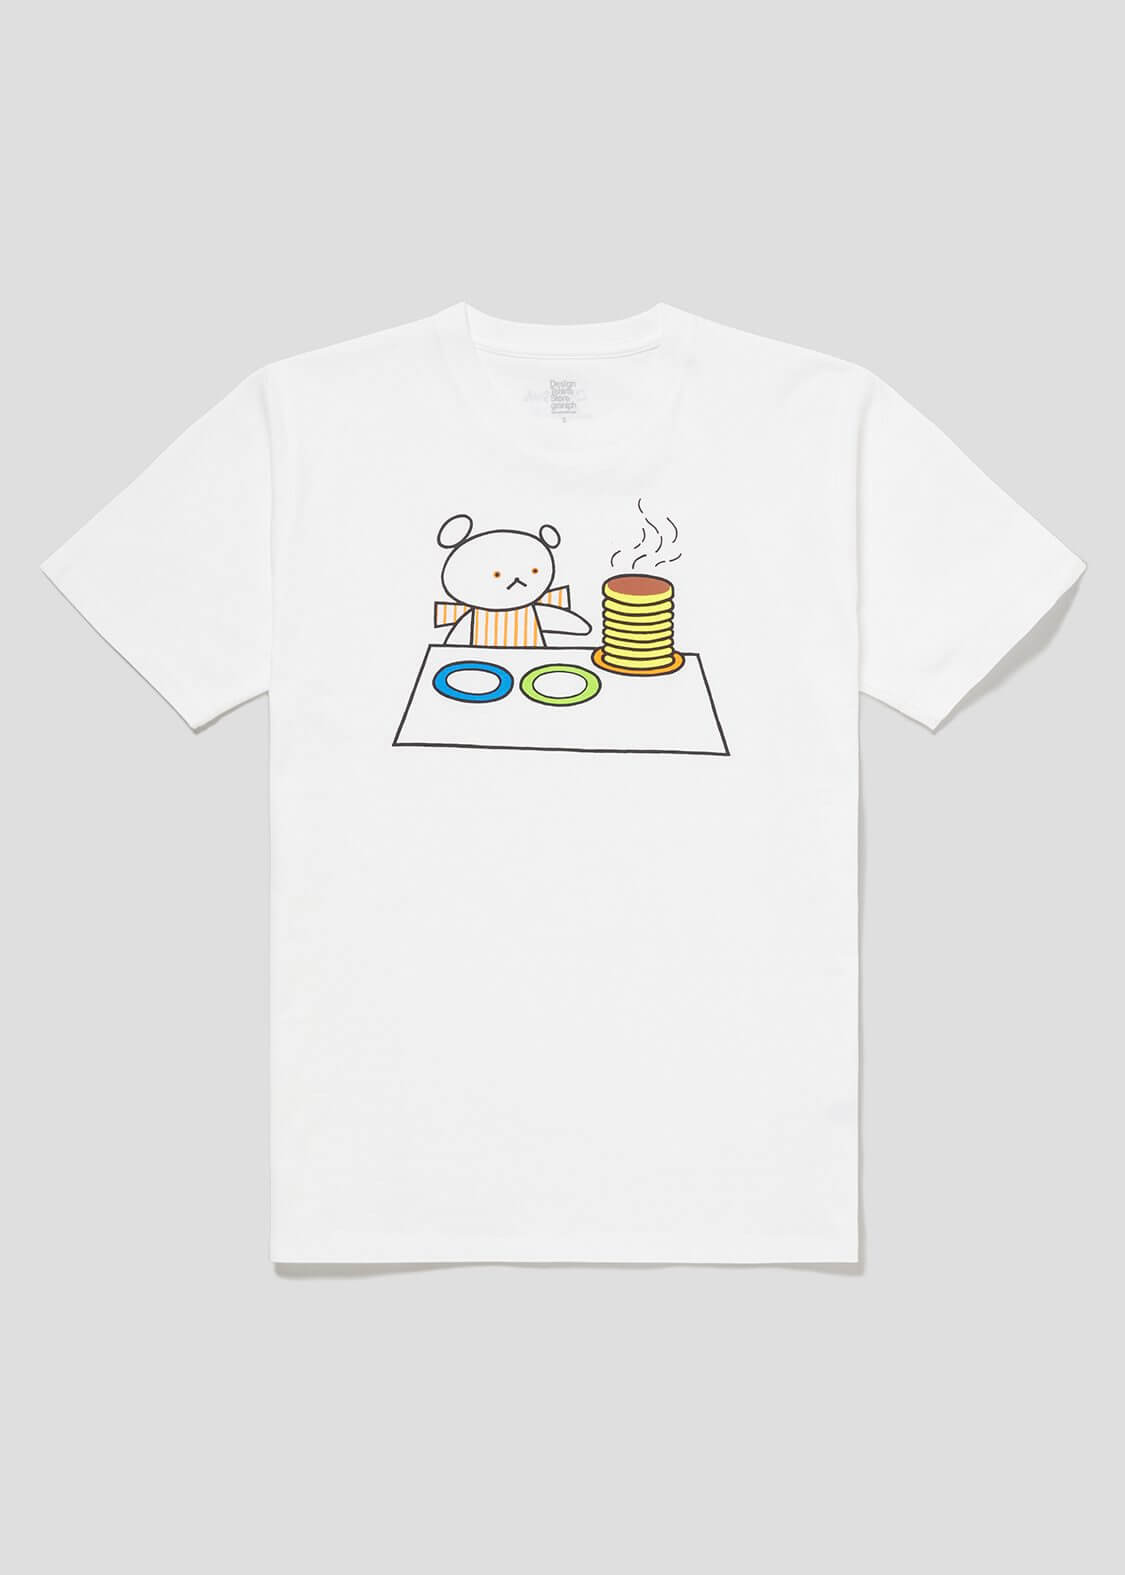 Tシャツ「ほっとけーき」2,200円(税込)(サイズ：SS/S/M/L/XL)